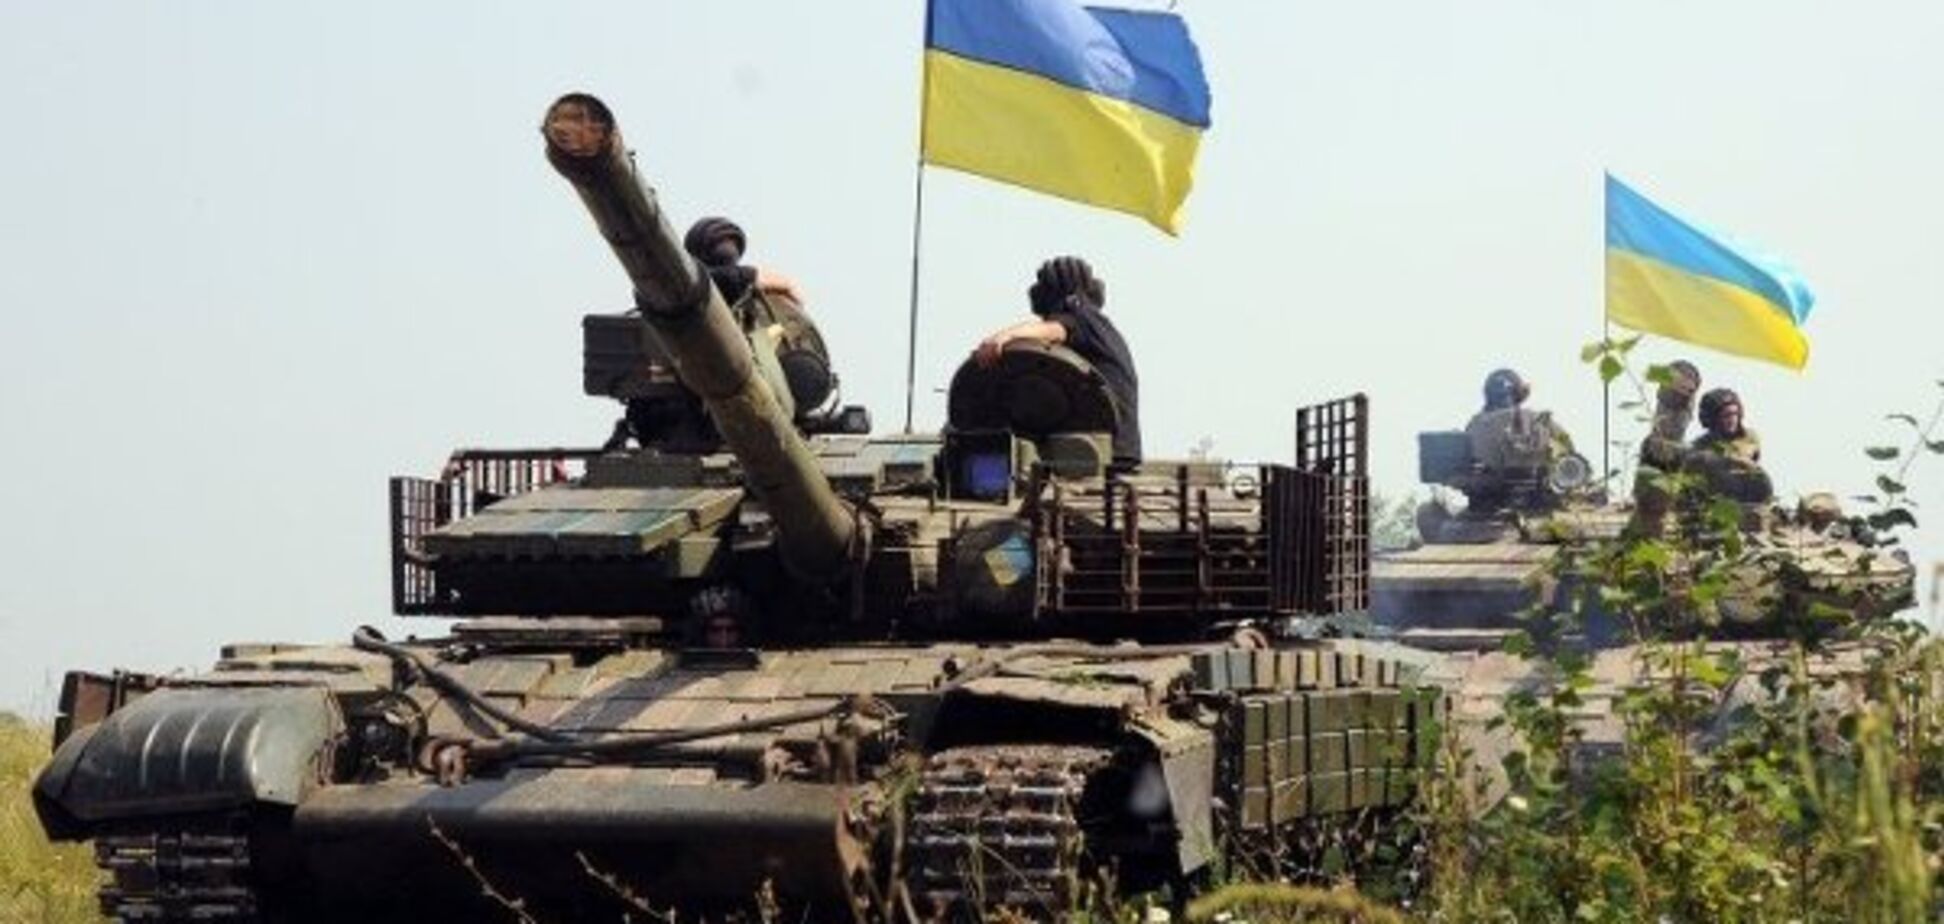 Продвинулись вглубь: ВСУ заняли новые позиции на Донбассе. Появилось видео